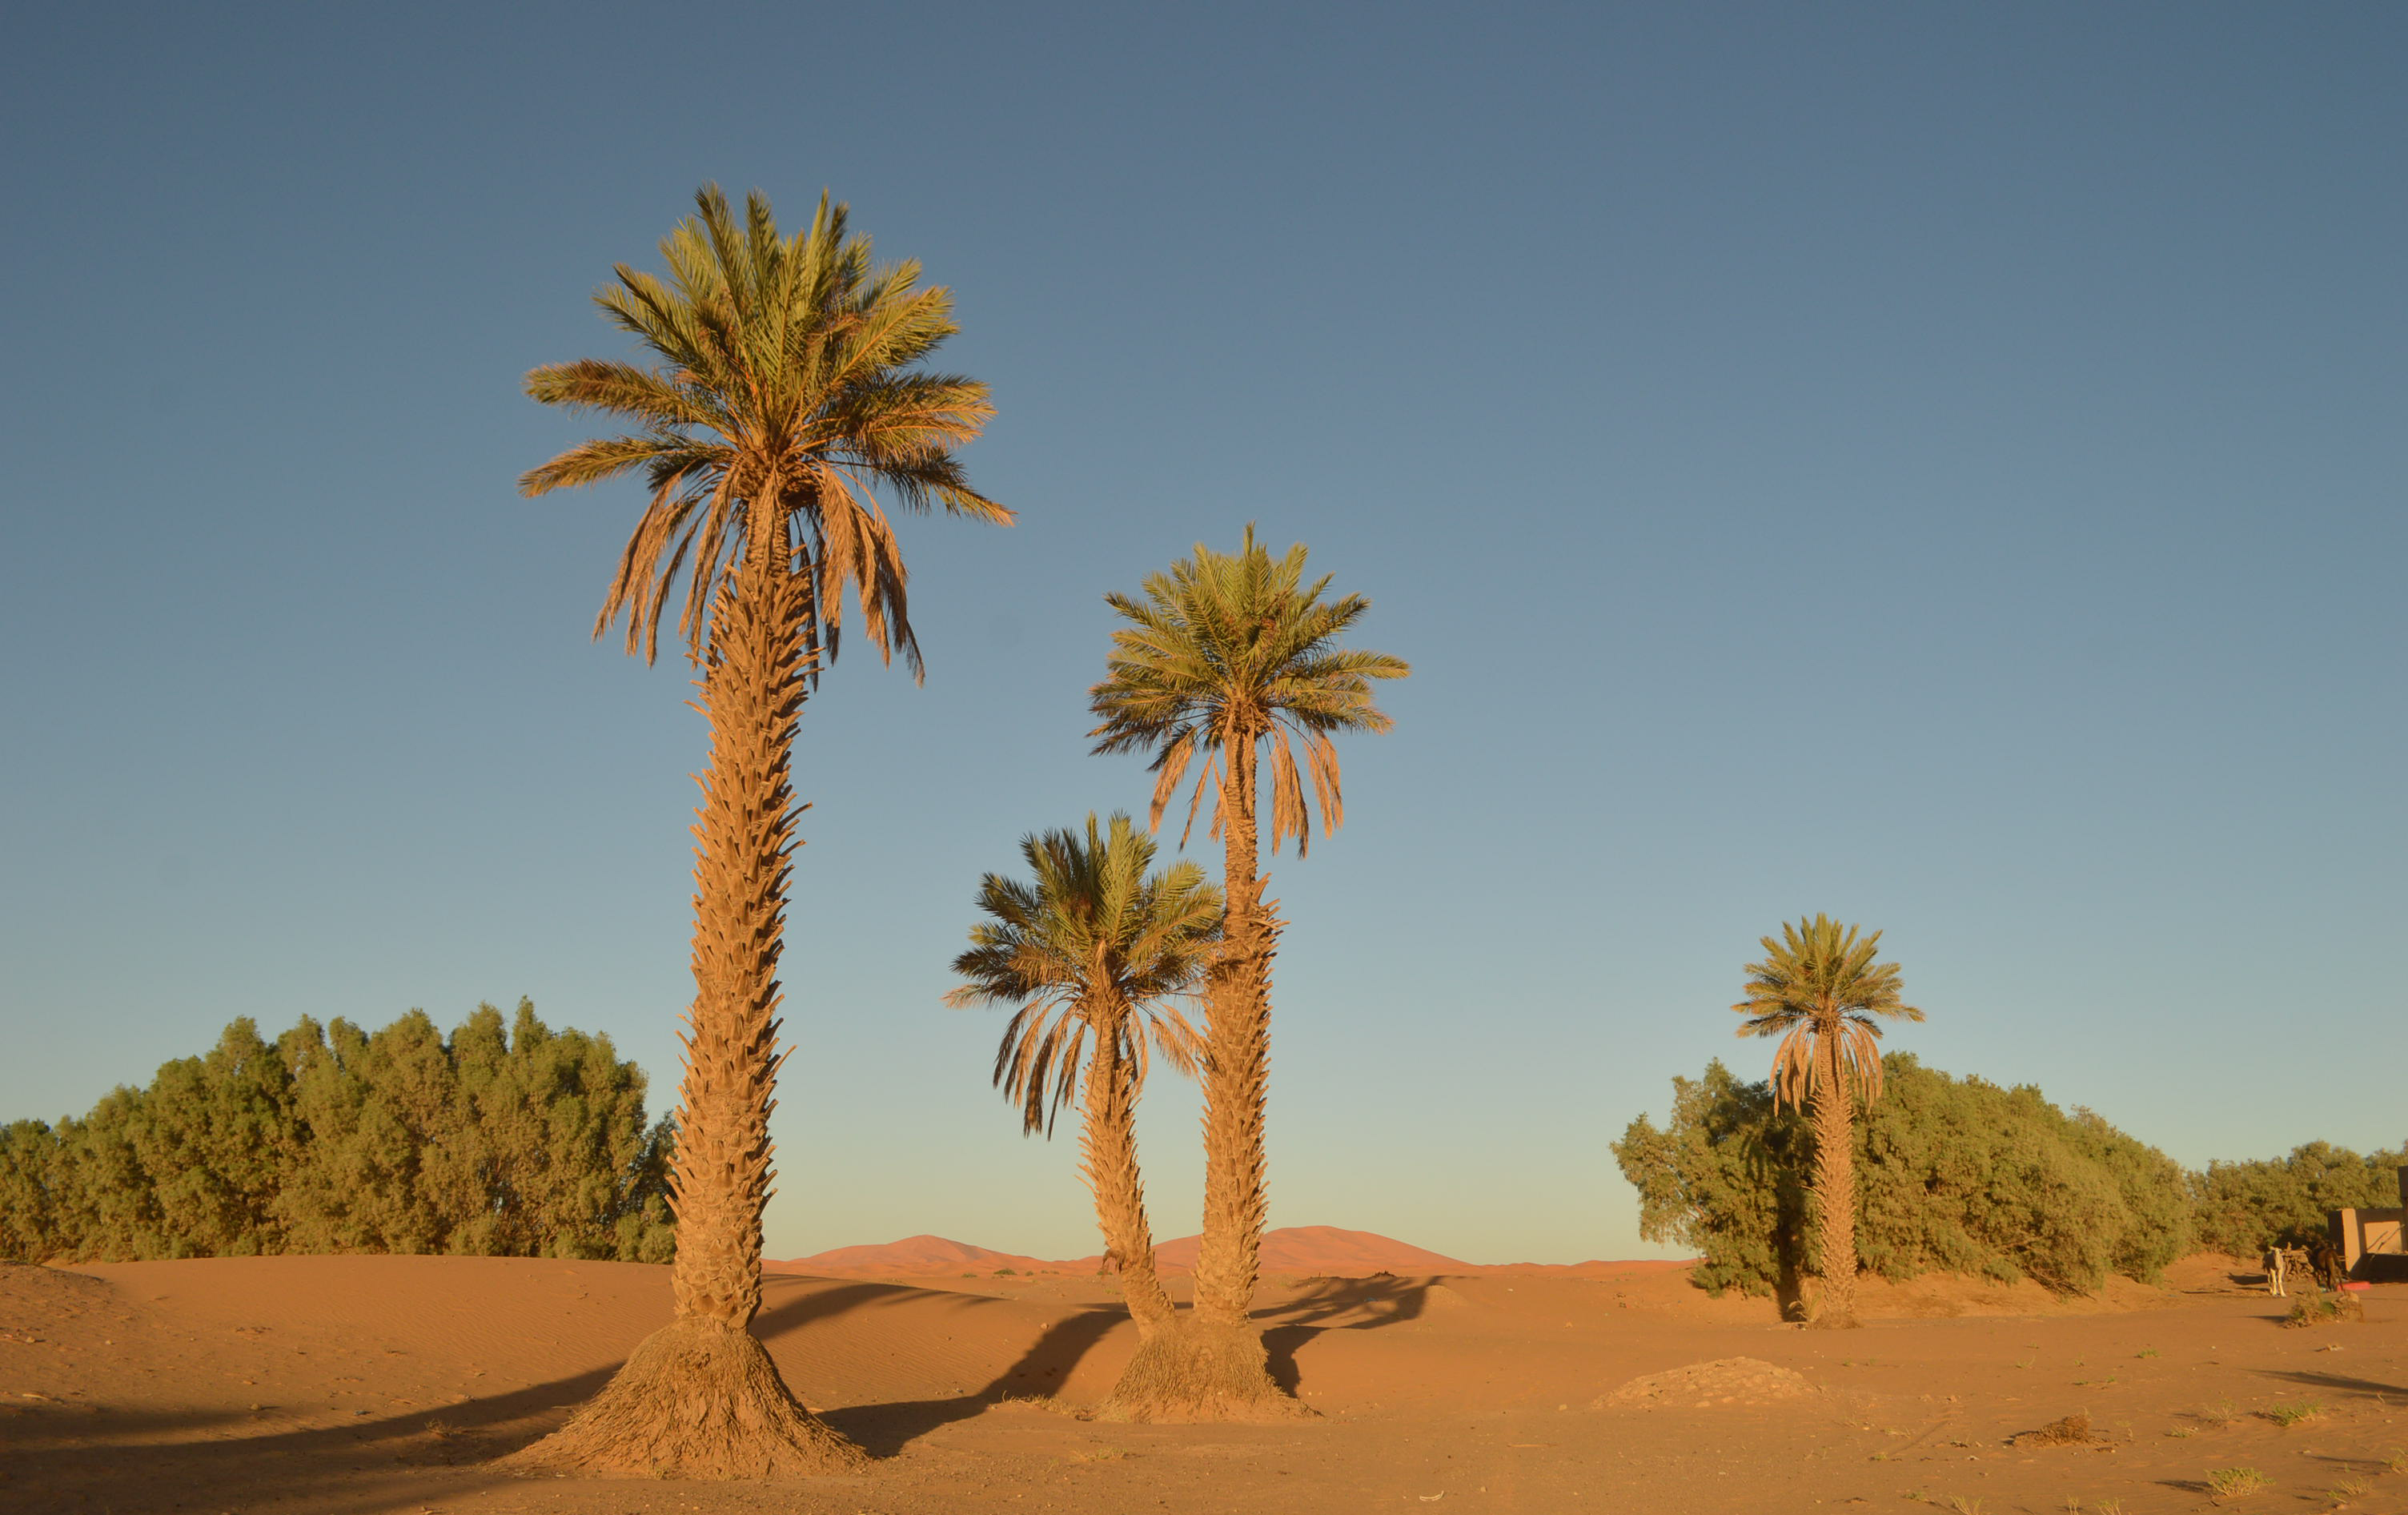 走进撒哈拉的红色沙漠,想象着三毛当年的感受,一个字,热!